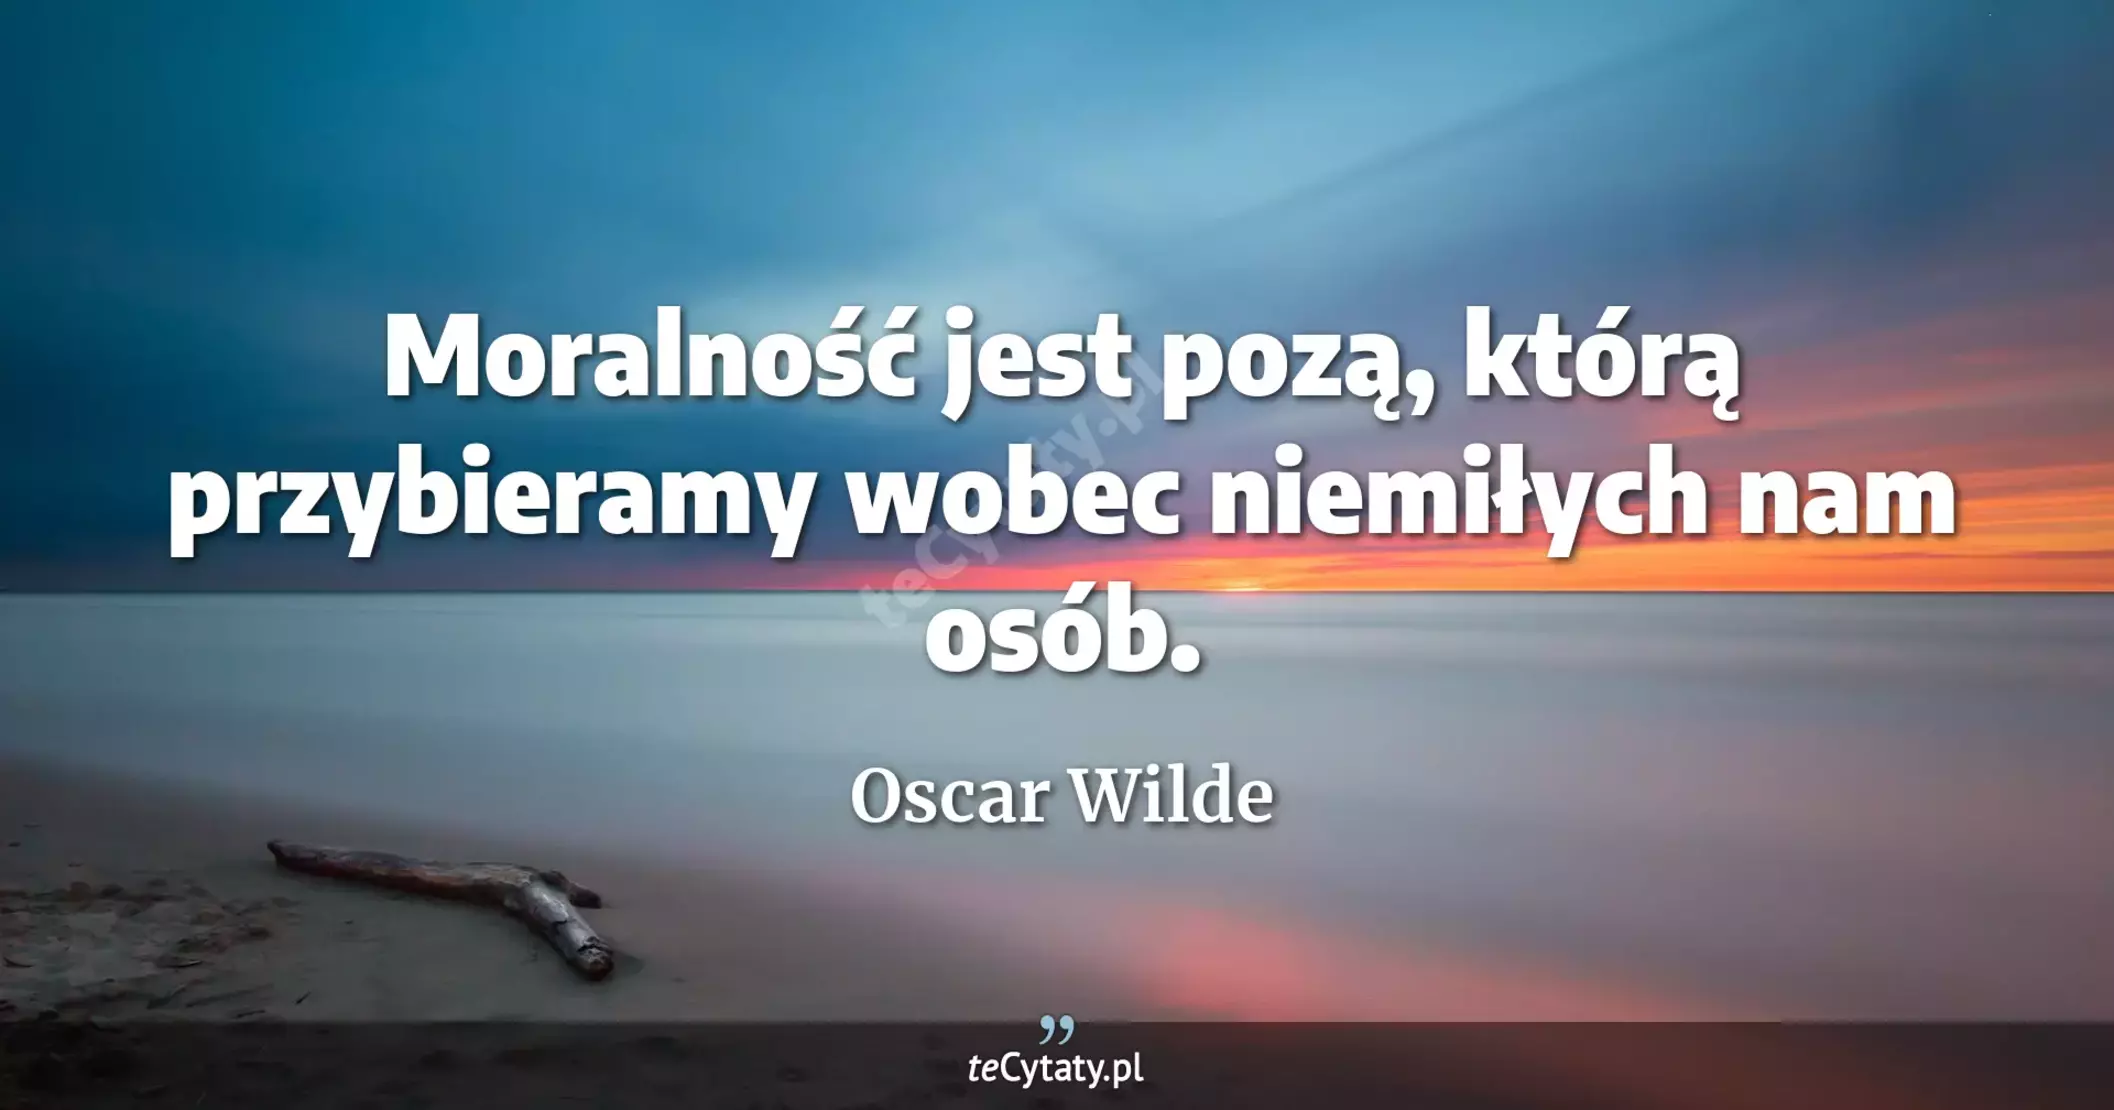 Moralność jest pozą, którą przybieramy wobec niemiłych nam osób. - Oscar Wilde